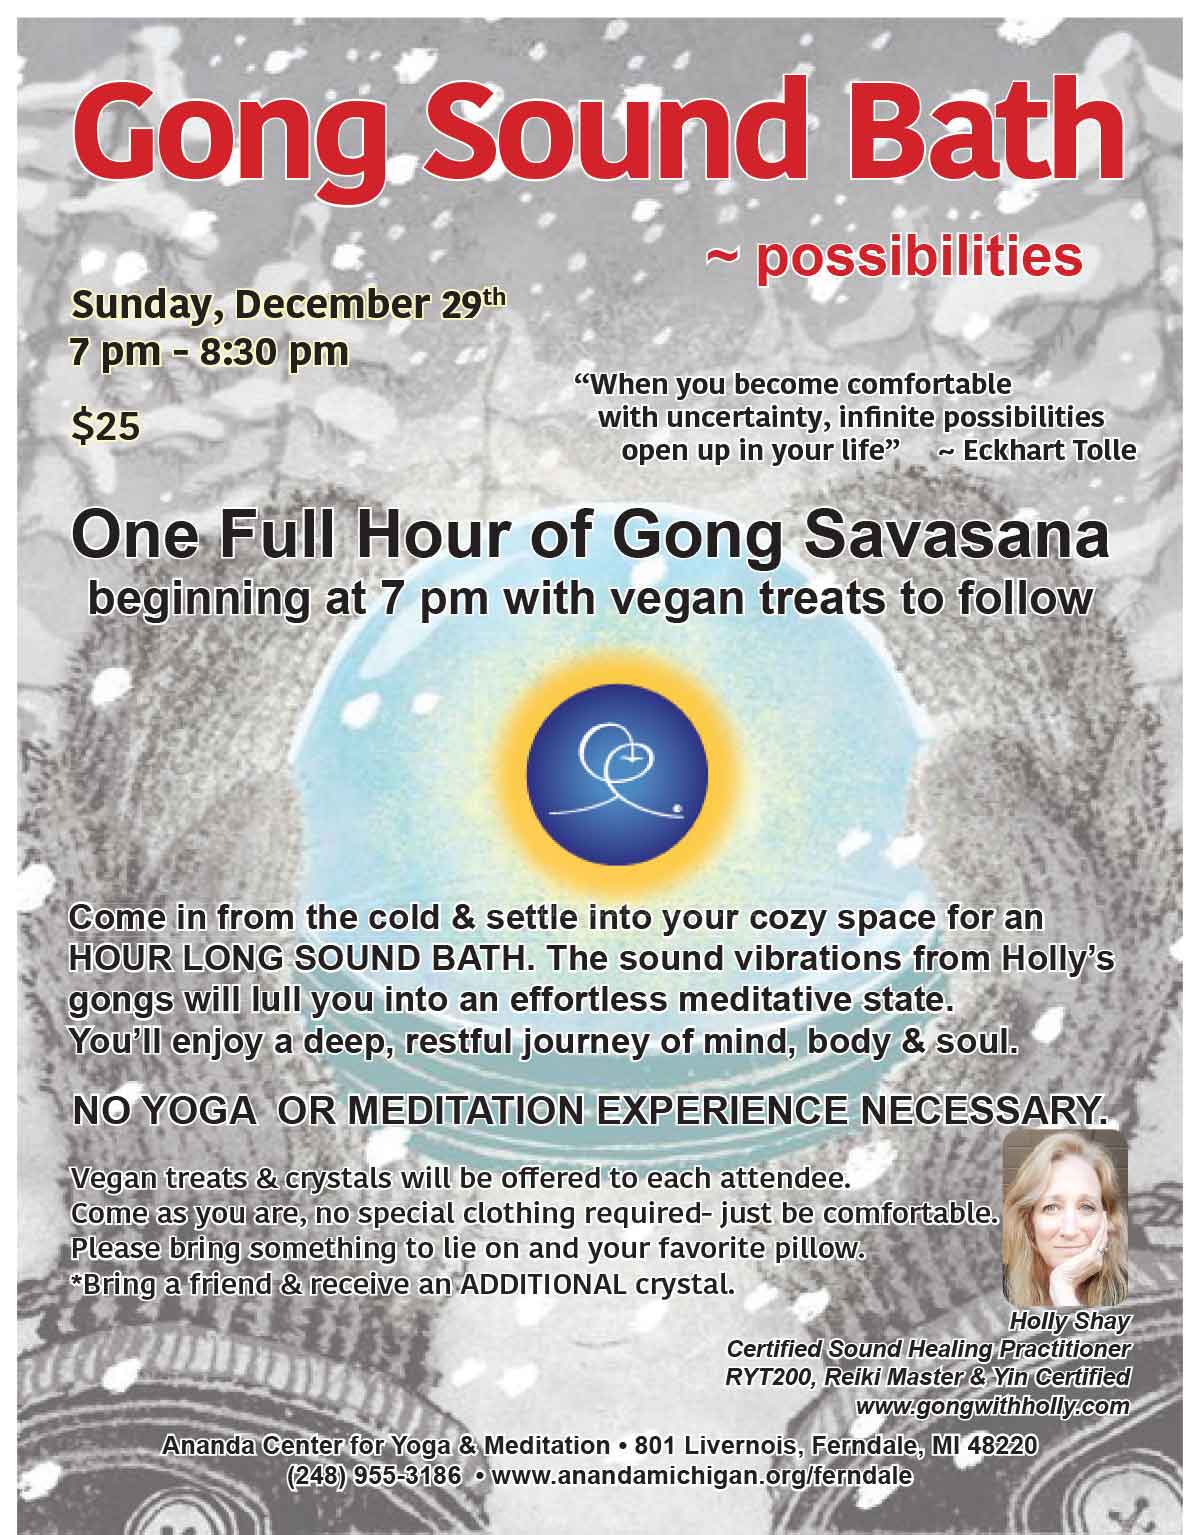 Gong Sound Bath ~ possibilities, Dec 29, 7pm, Ananda Center for Yoga & Meditation, Ferndale, MI